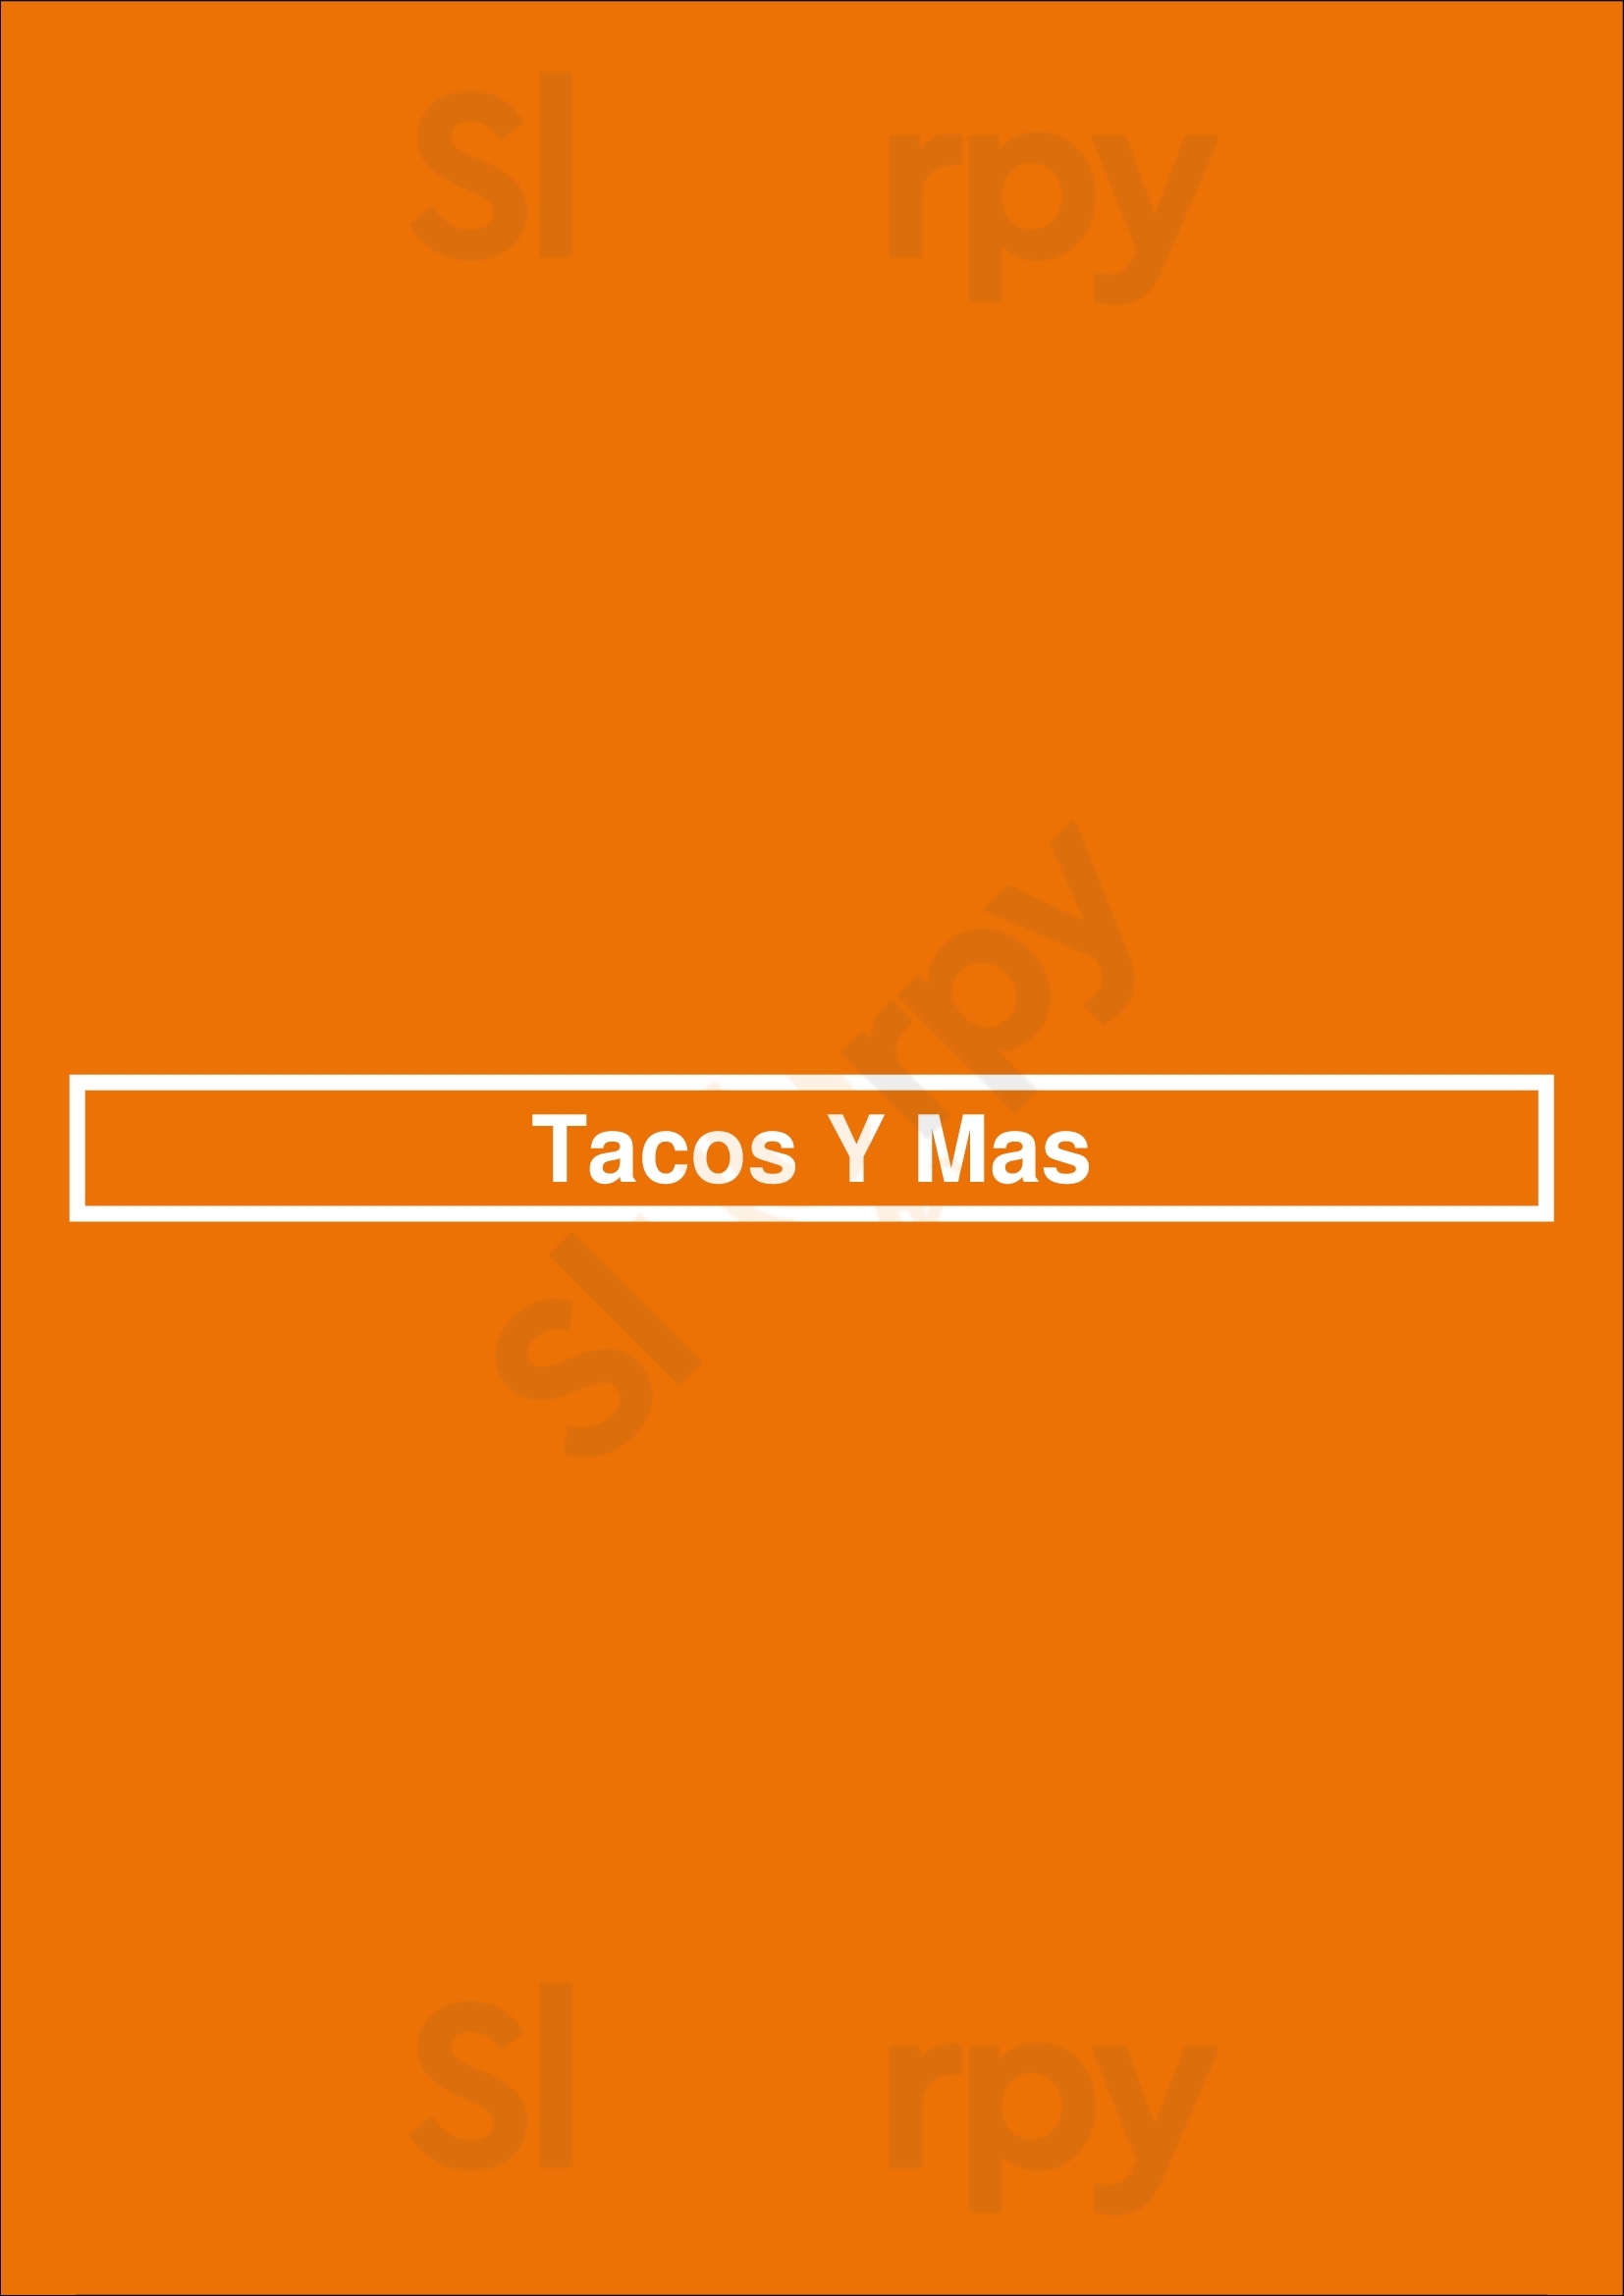 Tacos Y Mas - Casa View Dallas Menu - 1